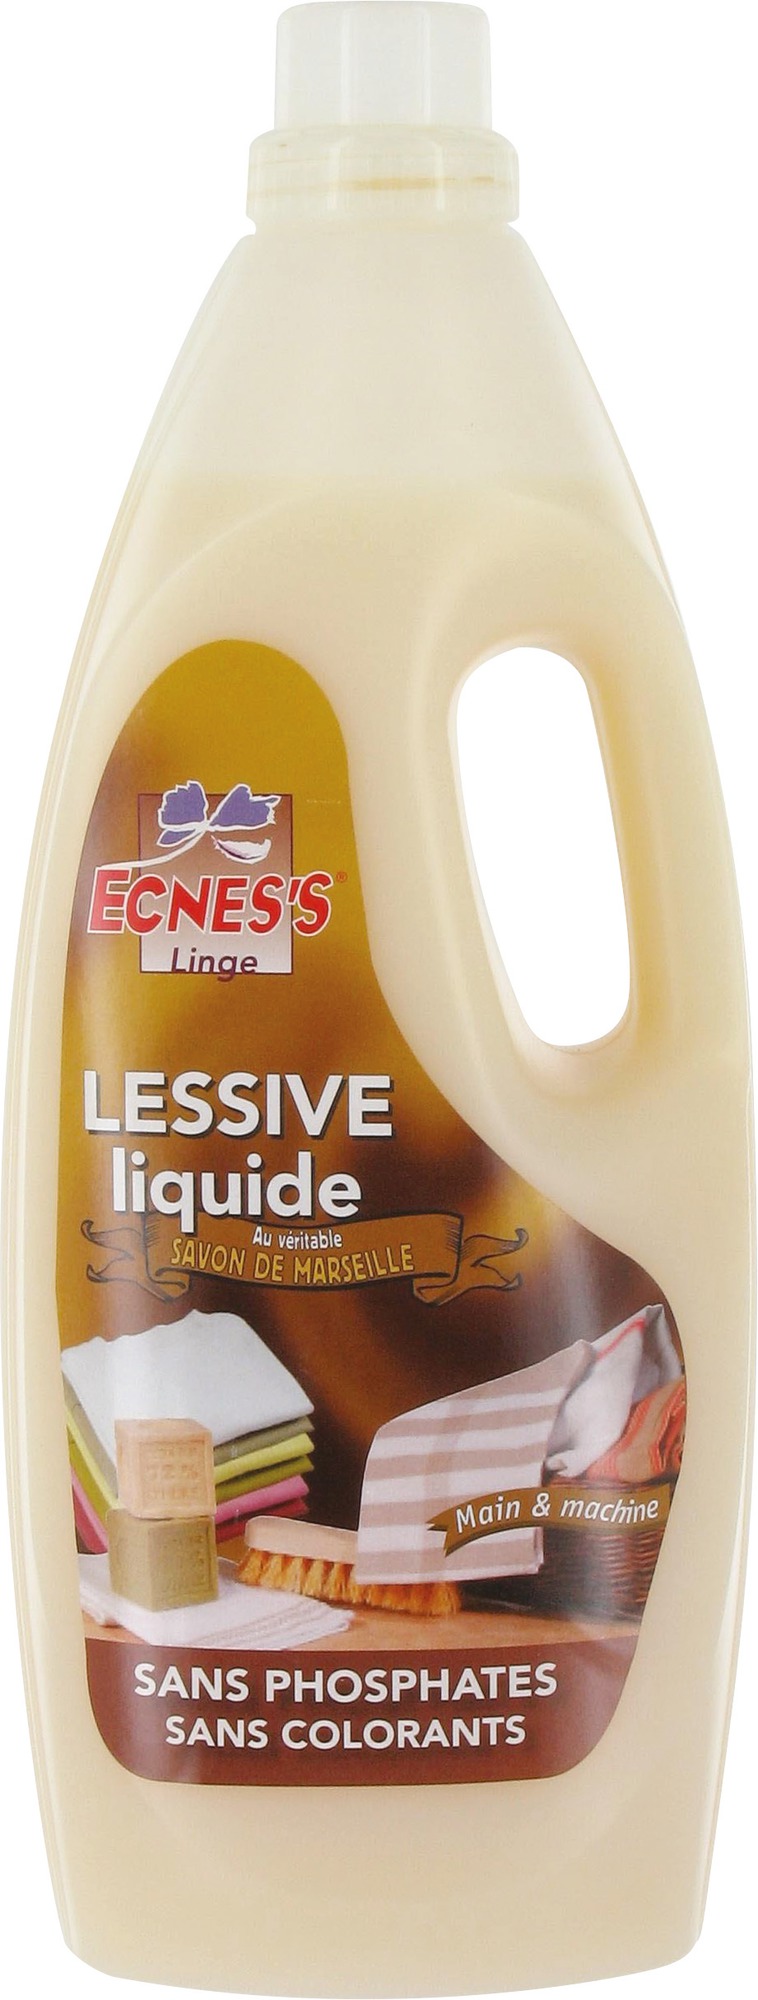 Lessive liquide Ecness - Sans phosphate - Savon de Marseille - Flacon 2 l